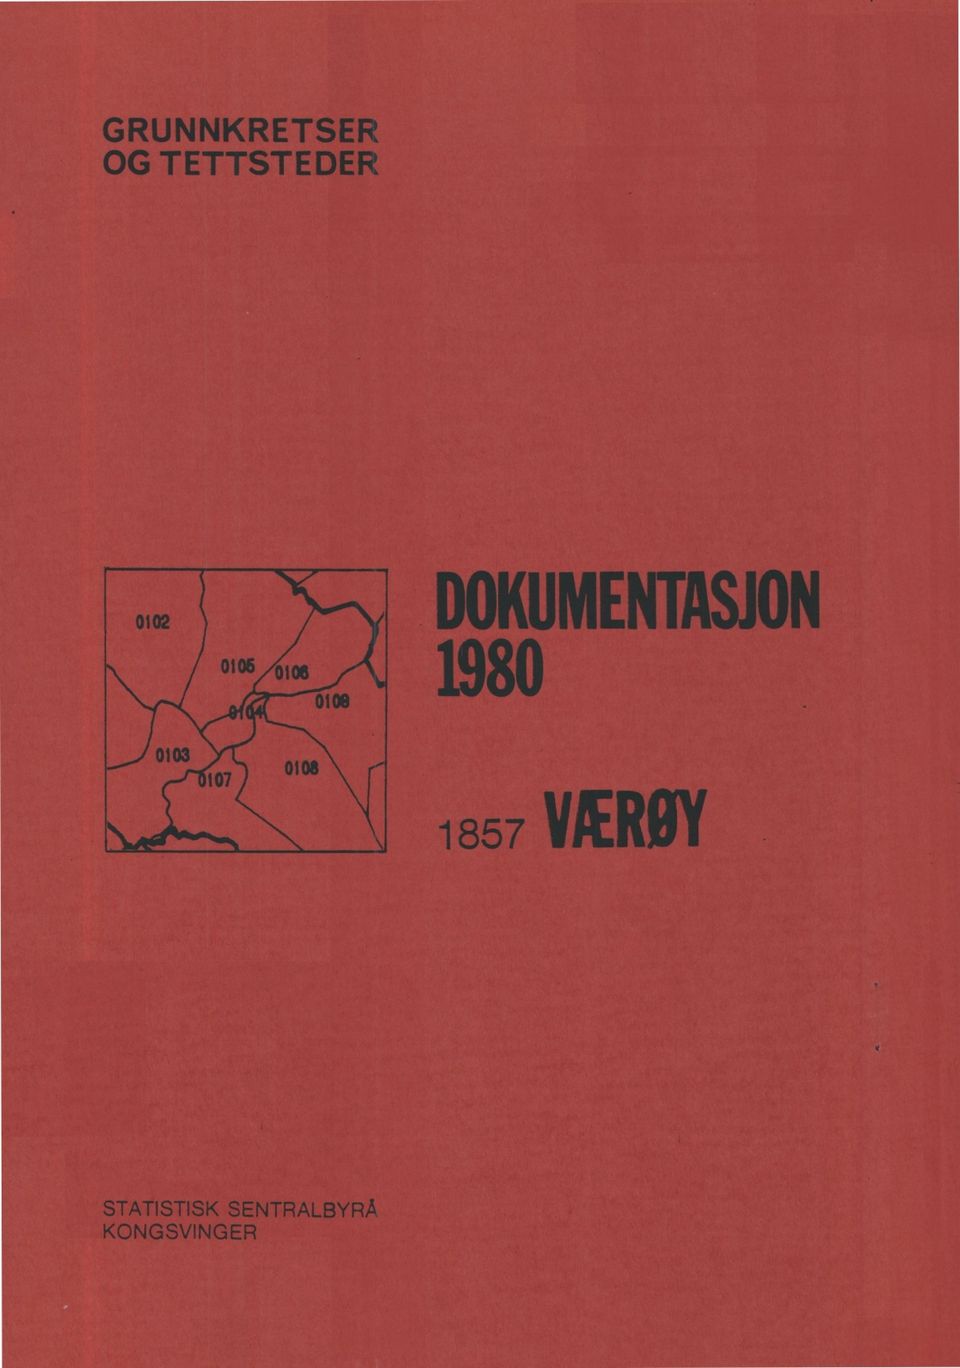 DOKUMENTASJON 1980